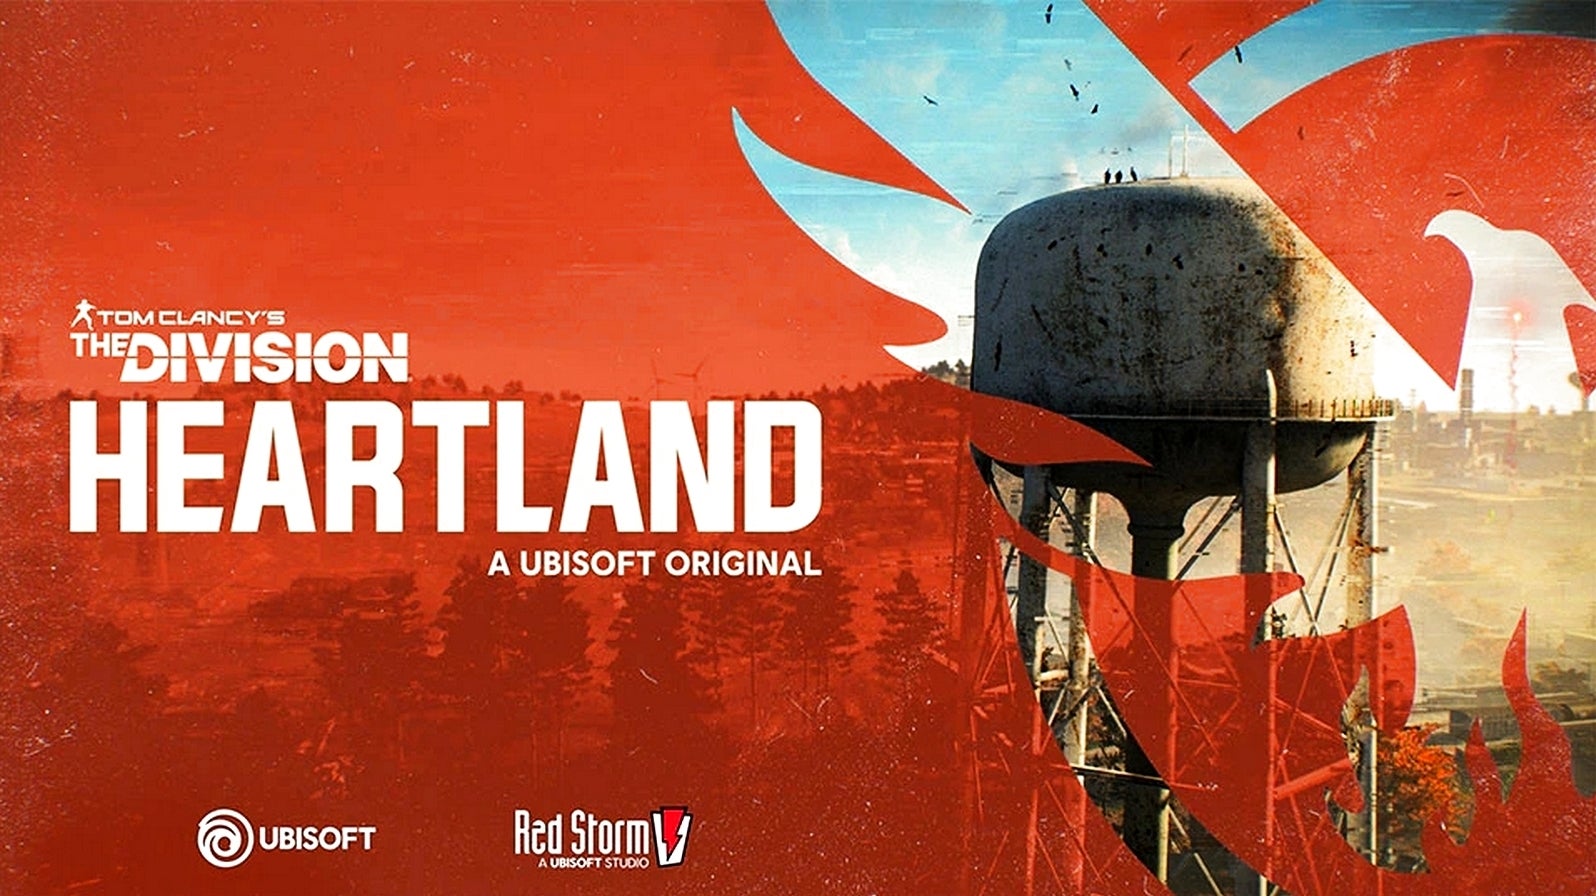 Bilder zu The Division: Heartland ist ein neues Free-to-play-Spiel von Red Storm